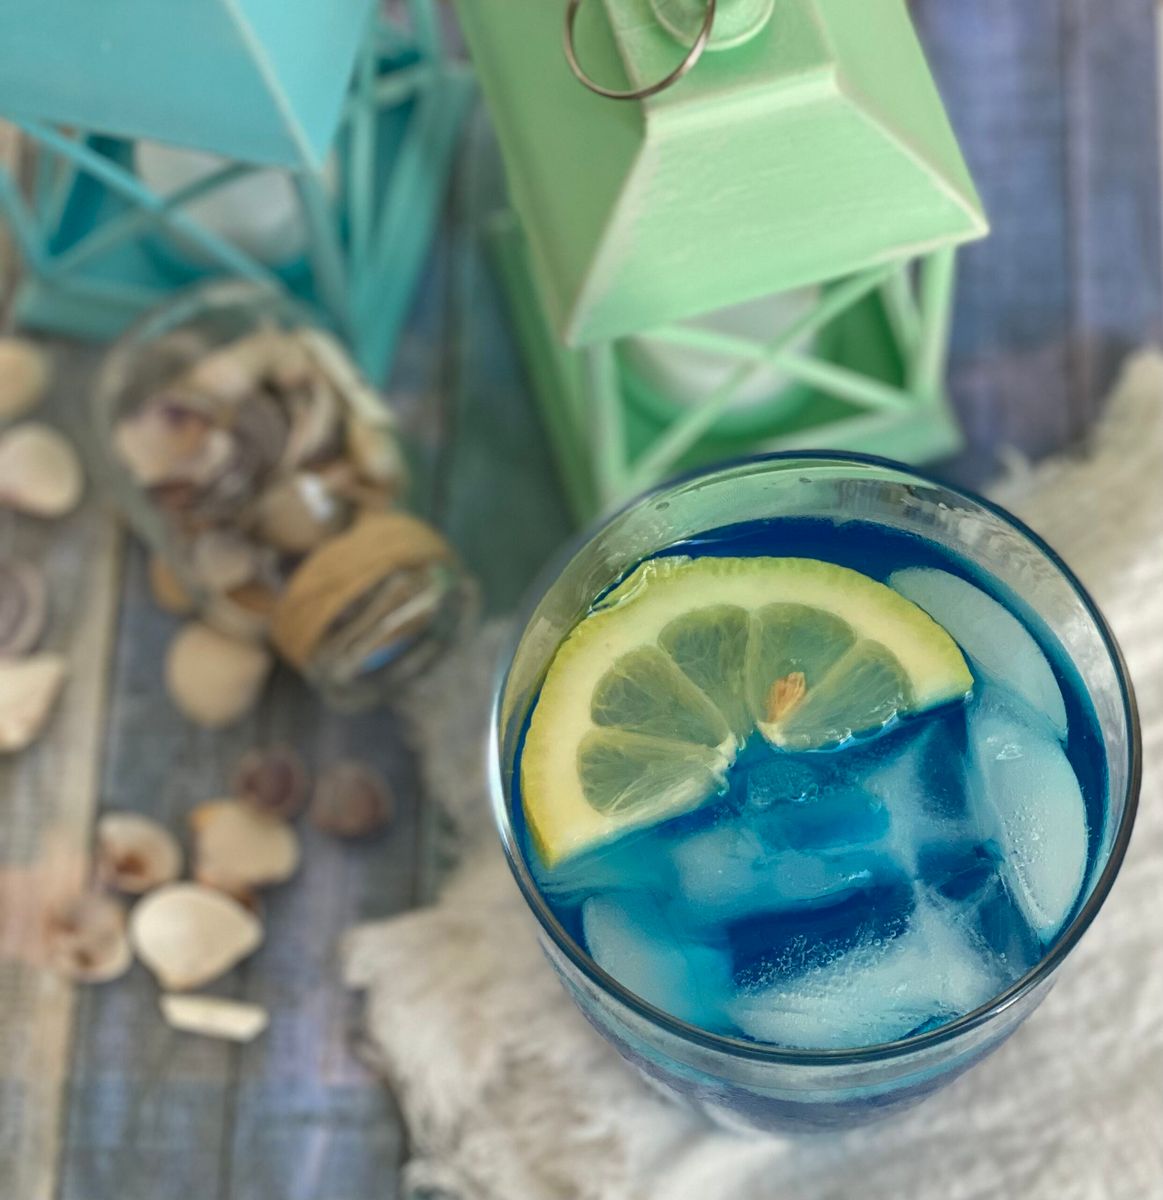 Refreshing Blue Curacao Lemonade Drink - Burnt Apple